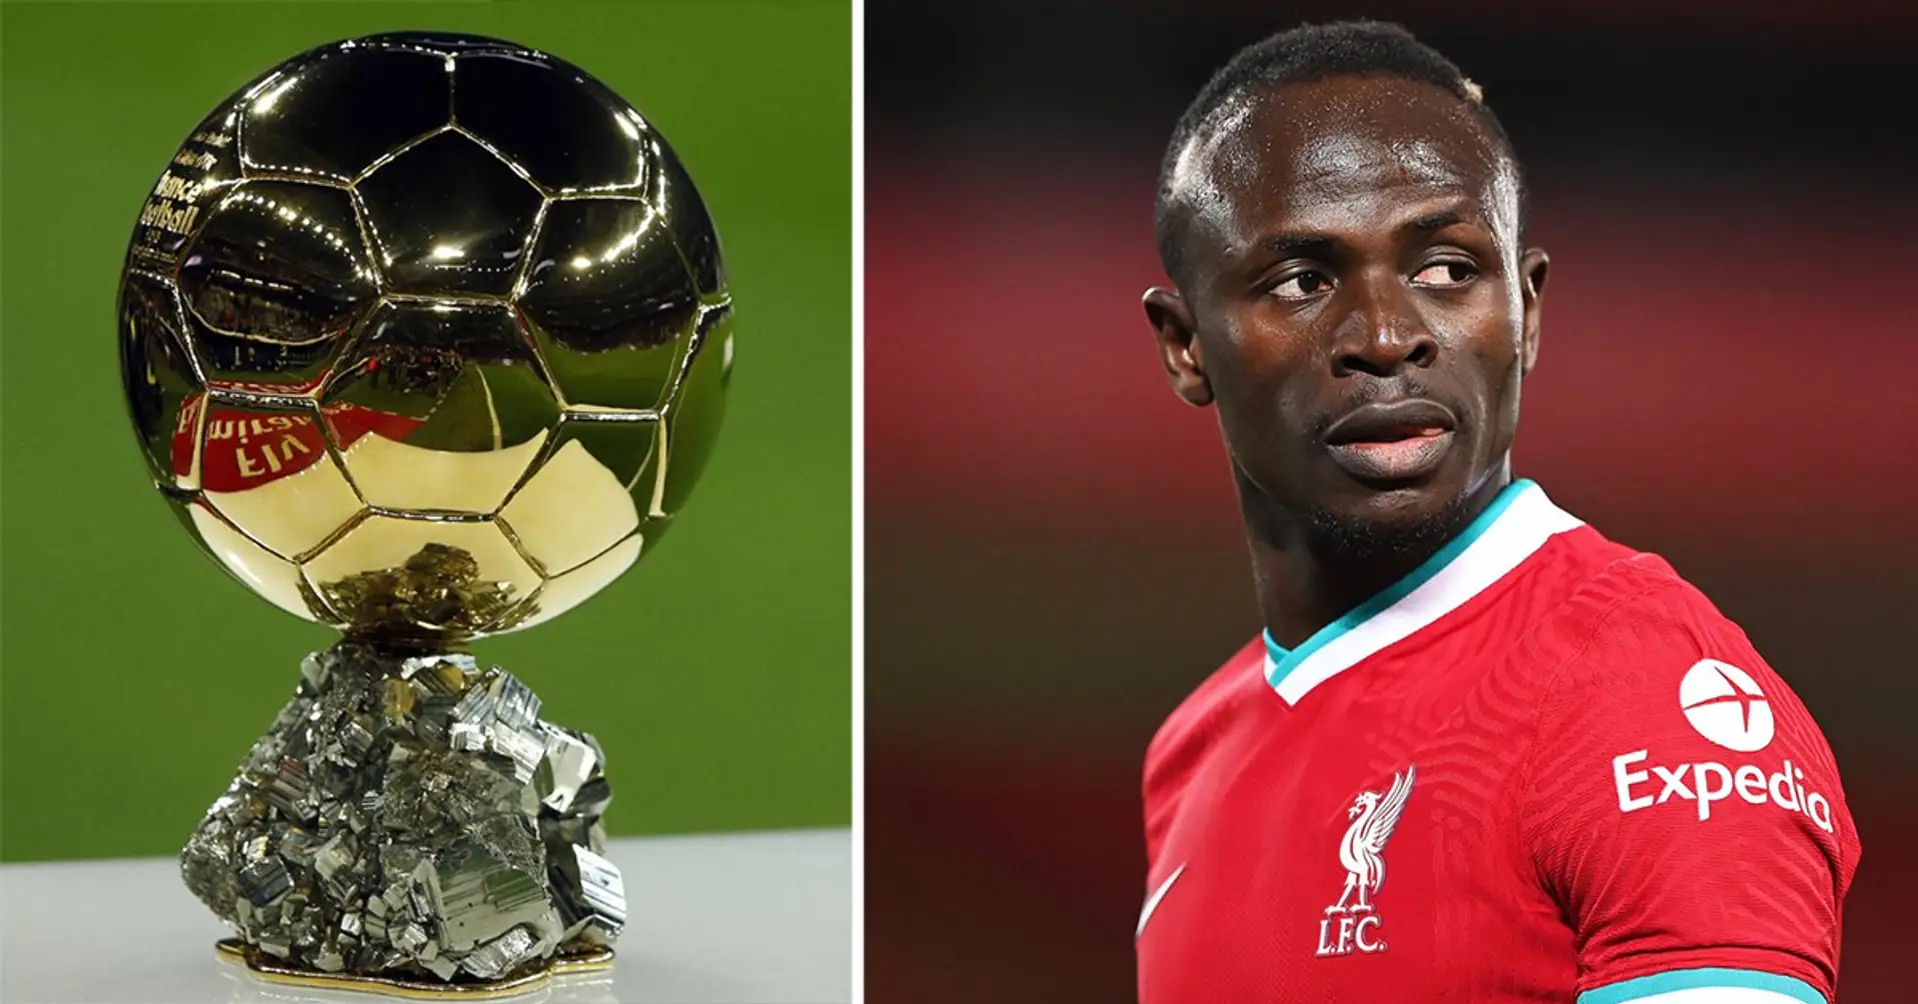 "Inakzeptabel": Sadio Mane nennt Spieler, der auf der Ballon-d'Or-Liste hätte stehen sollen